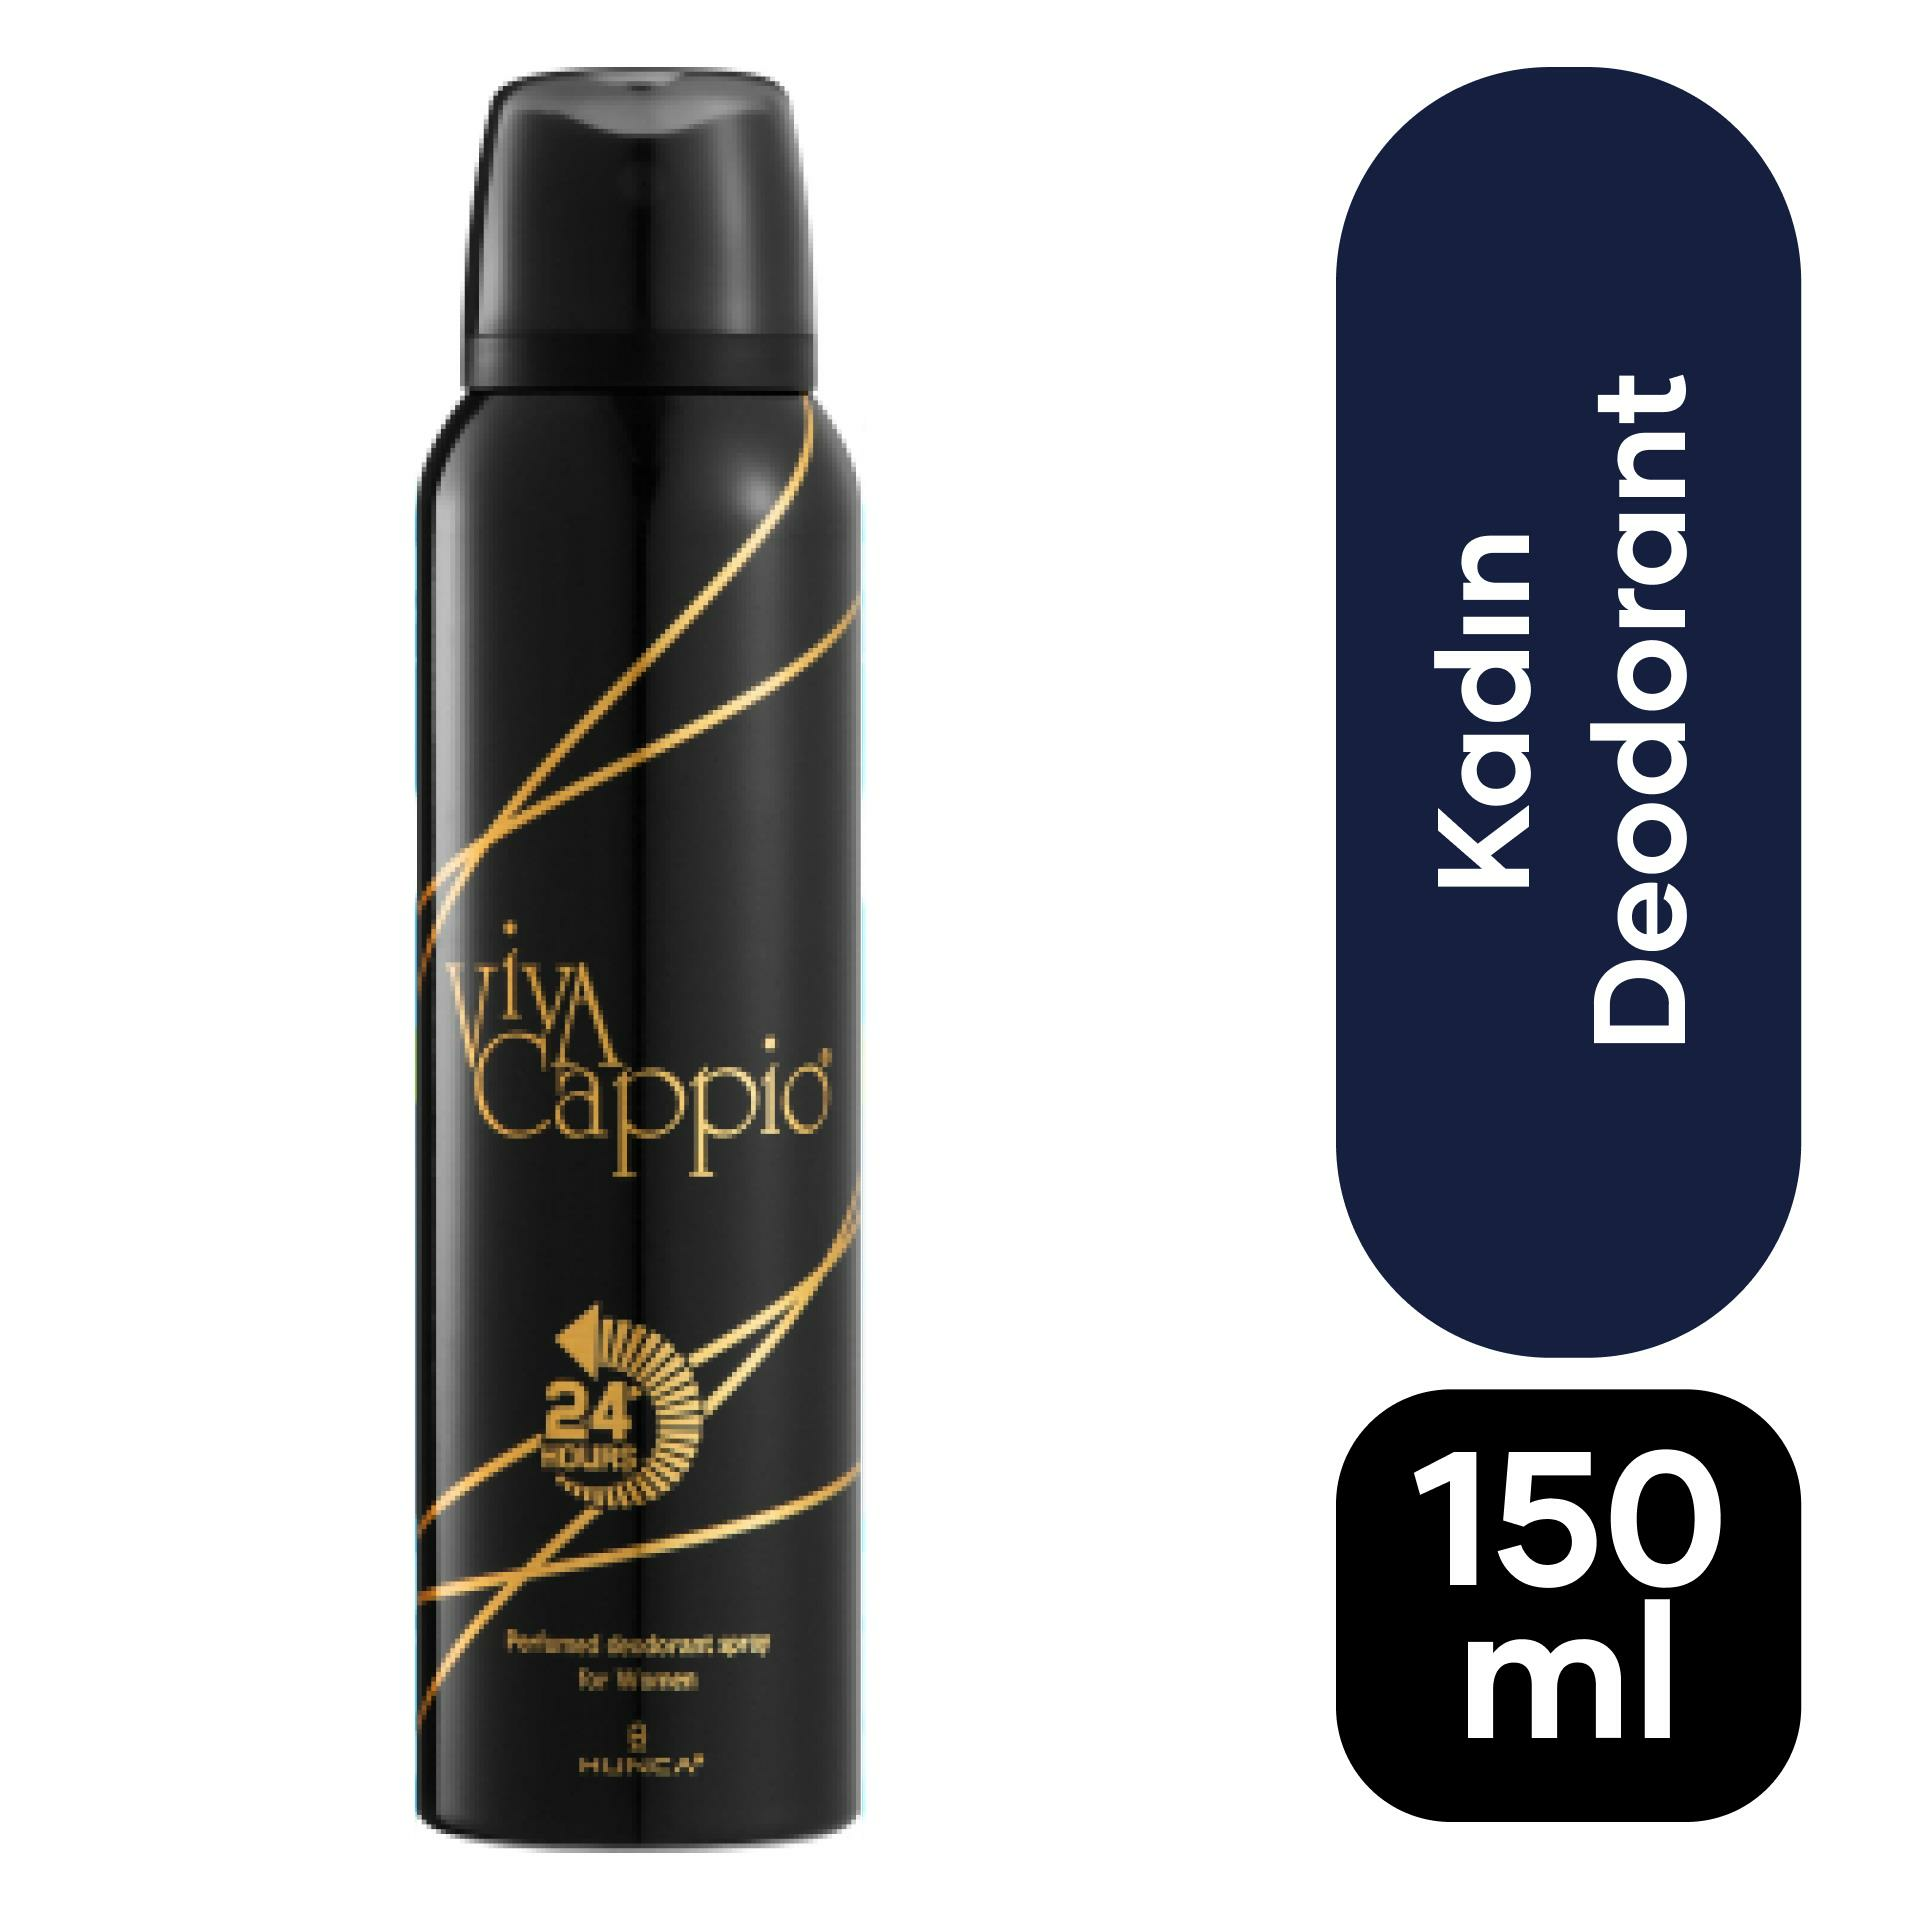 Viva Cappio Deodorant Kadın 150 ml